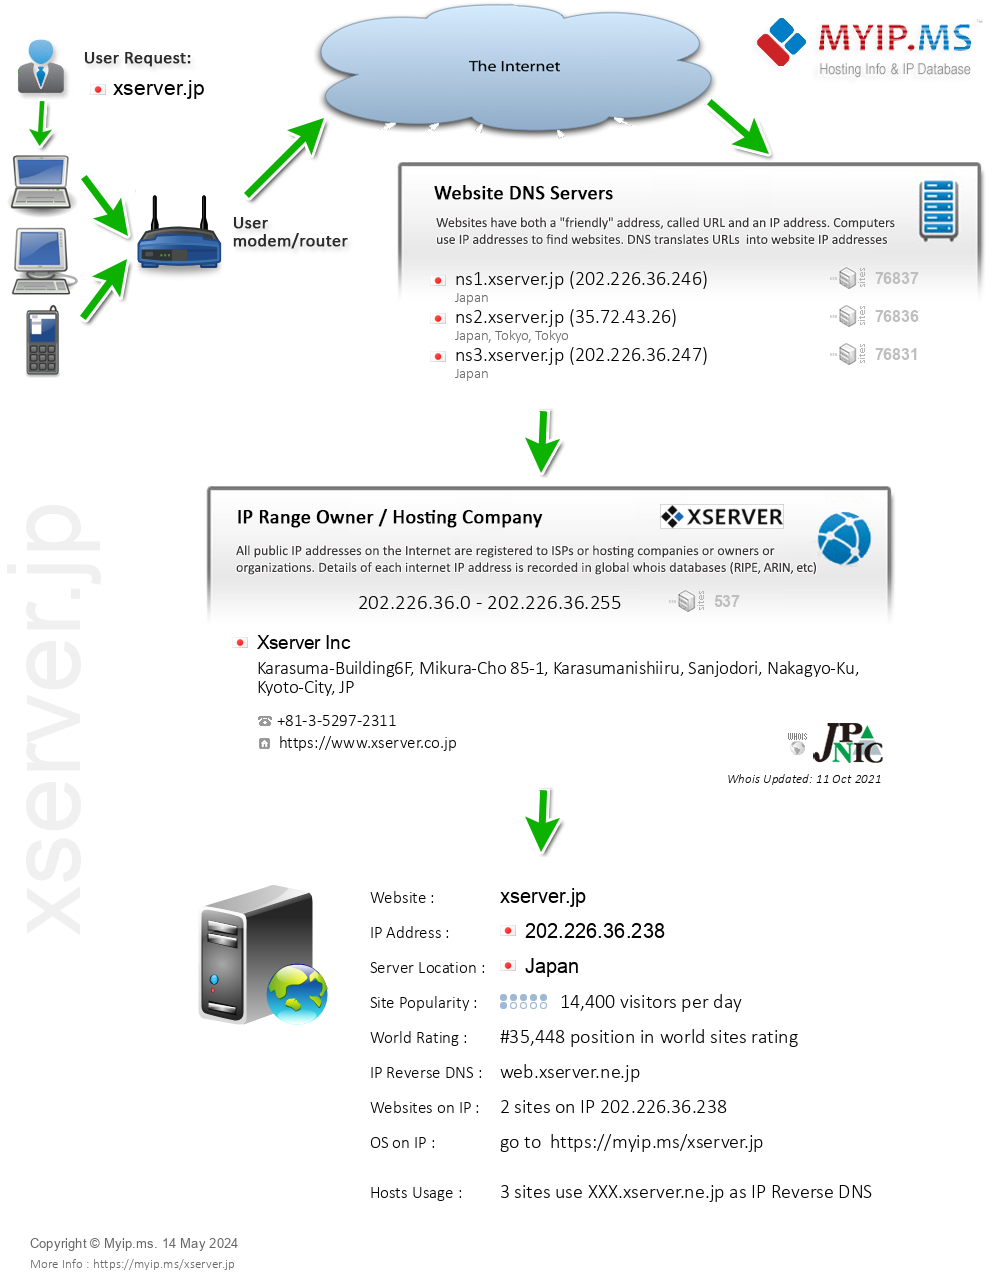 Xserver.jp - Website Hosting Visual IP Diagram